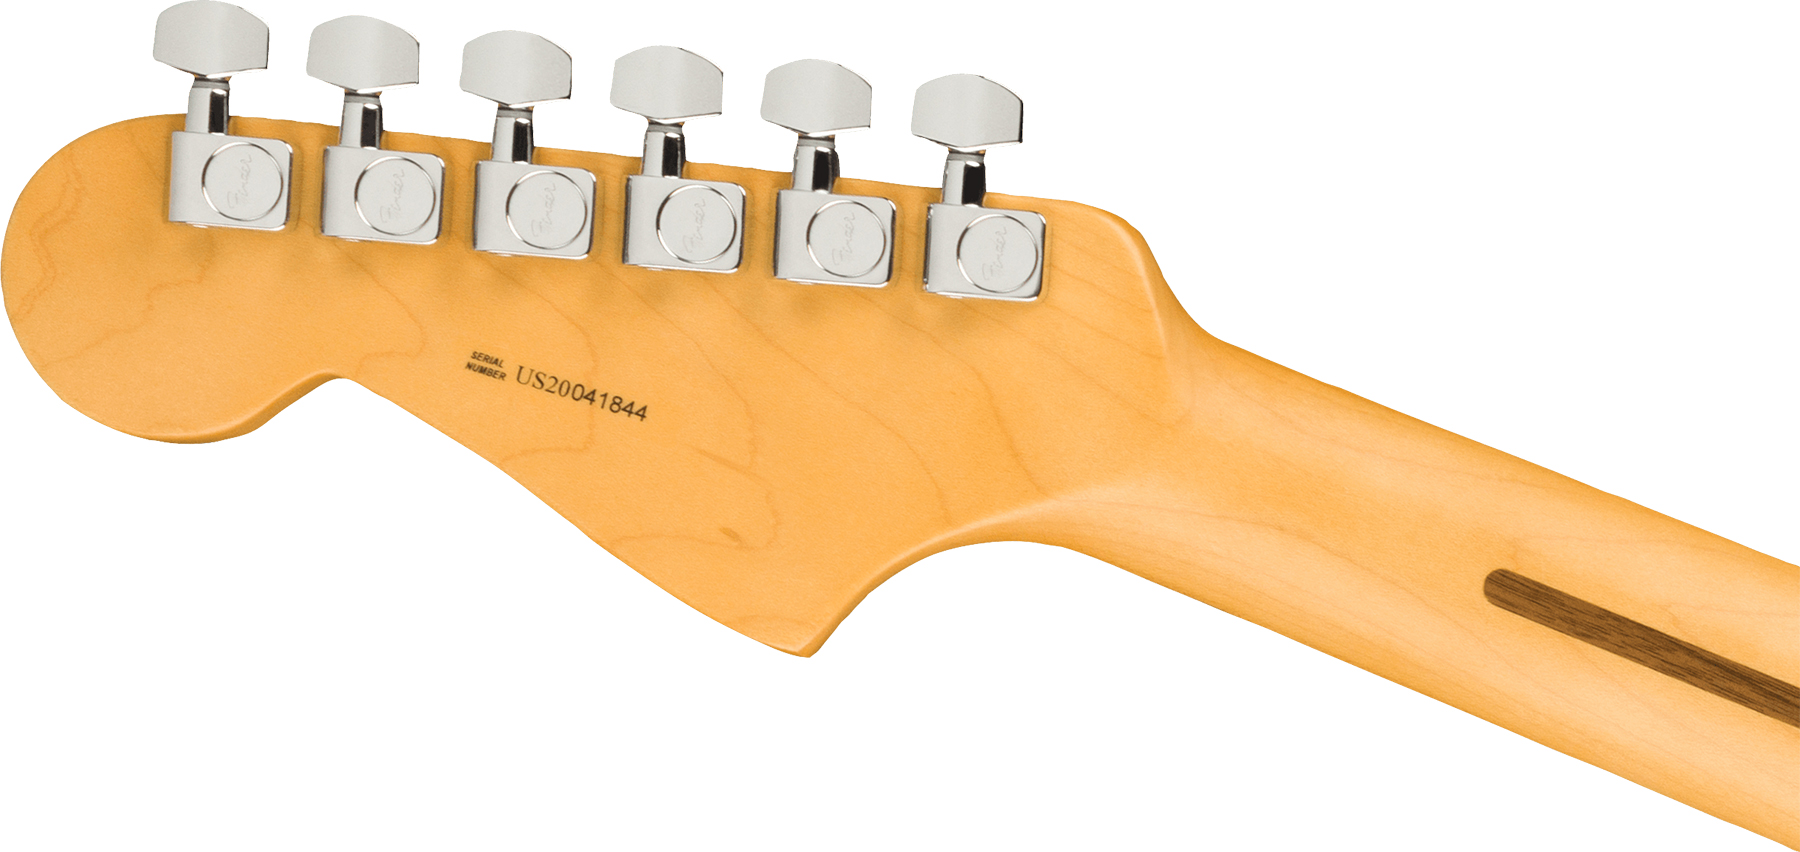 Fender Jazzmaster American Professional Ii Lh Gaucher Usa Rw - Mercury - Linkshandige elektrische gitaar - Variation 1